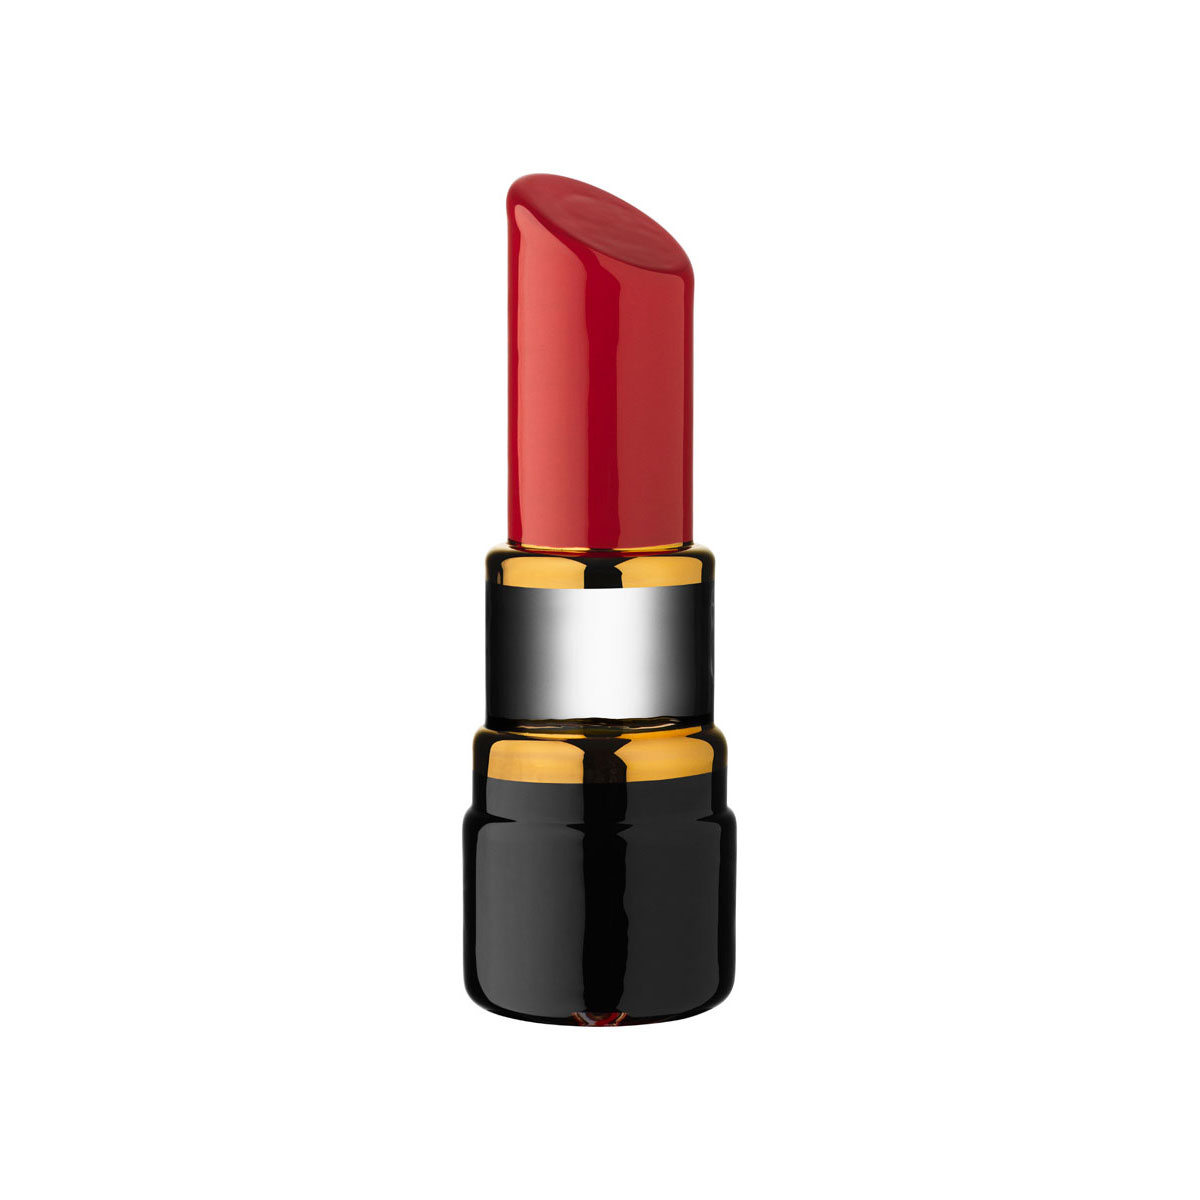 Kosta Boda Make Up Mini Lipstick, Red